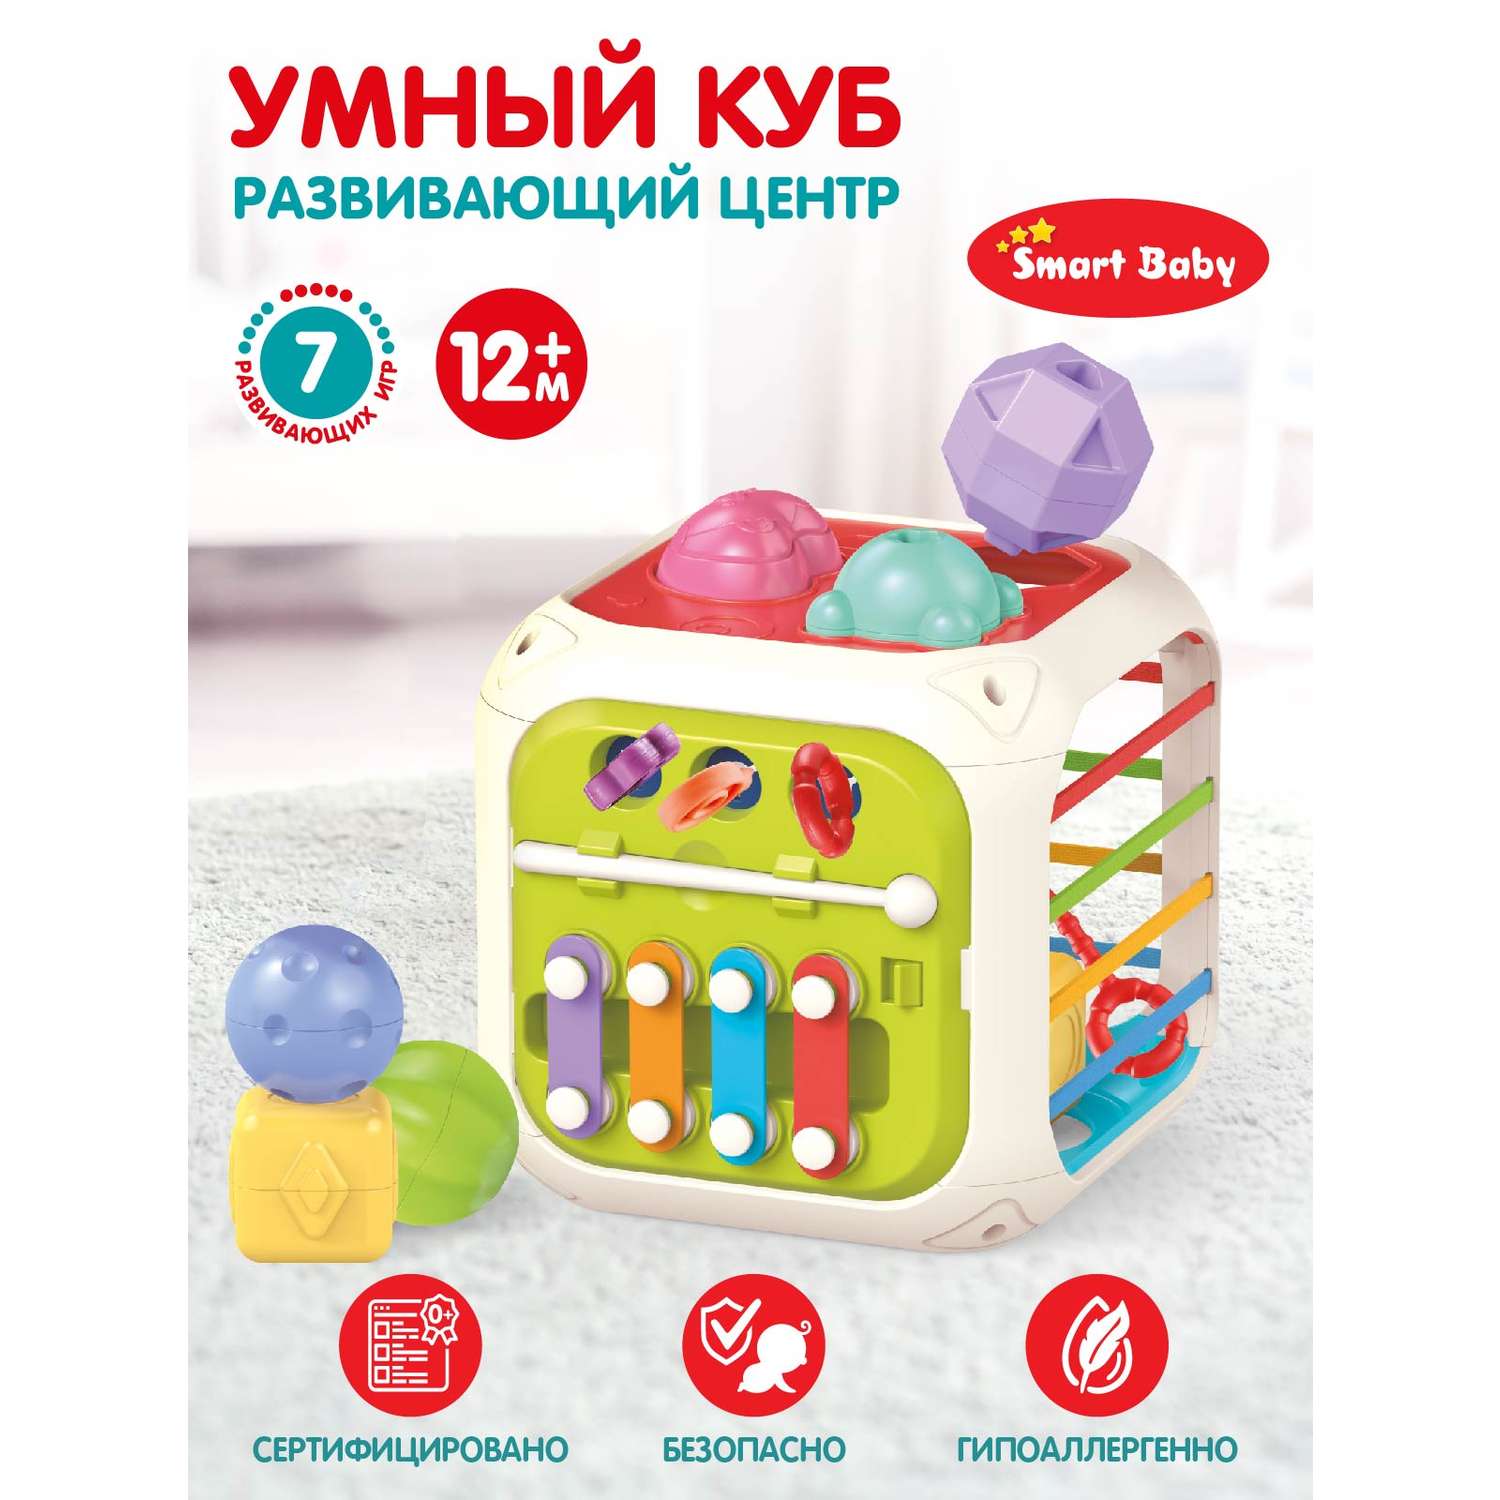 Развивающая игрушка Smart Baby Умный куб бизиборд JB0334079 - фото 1